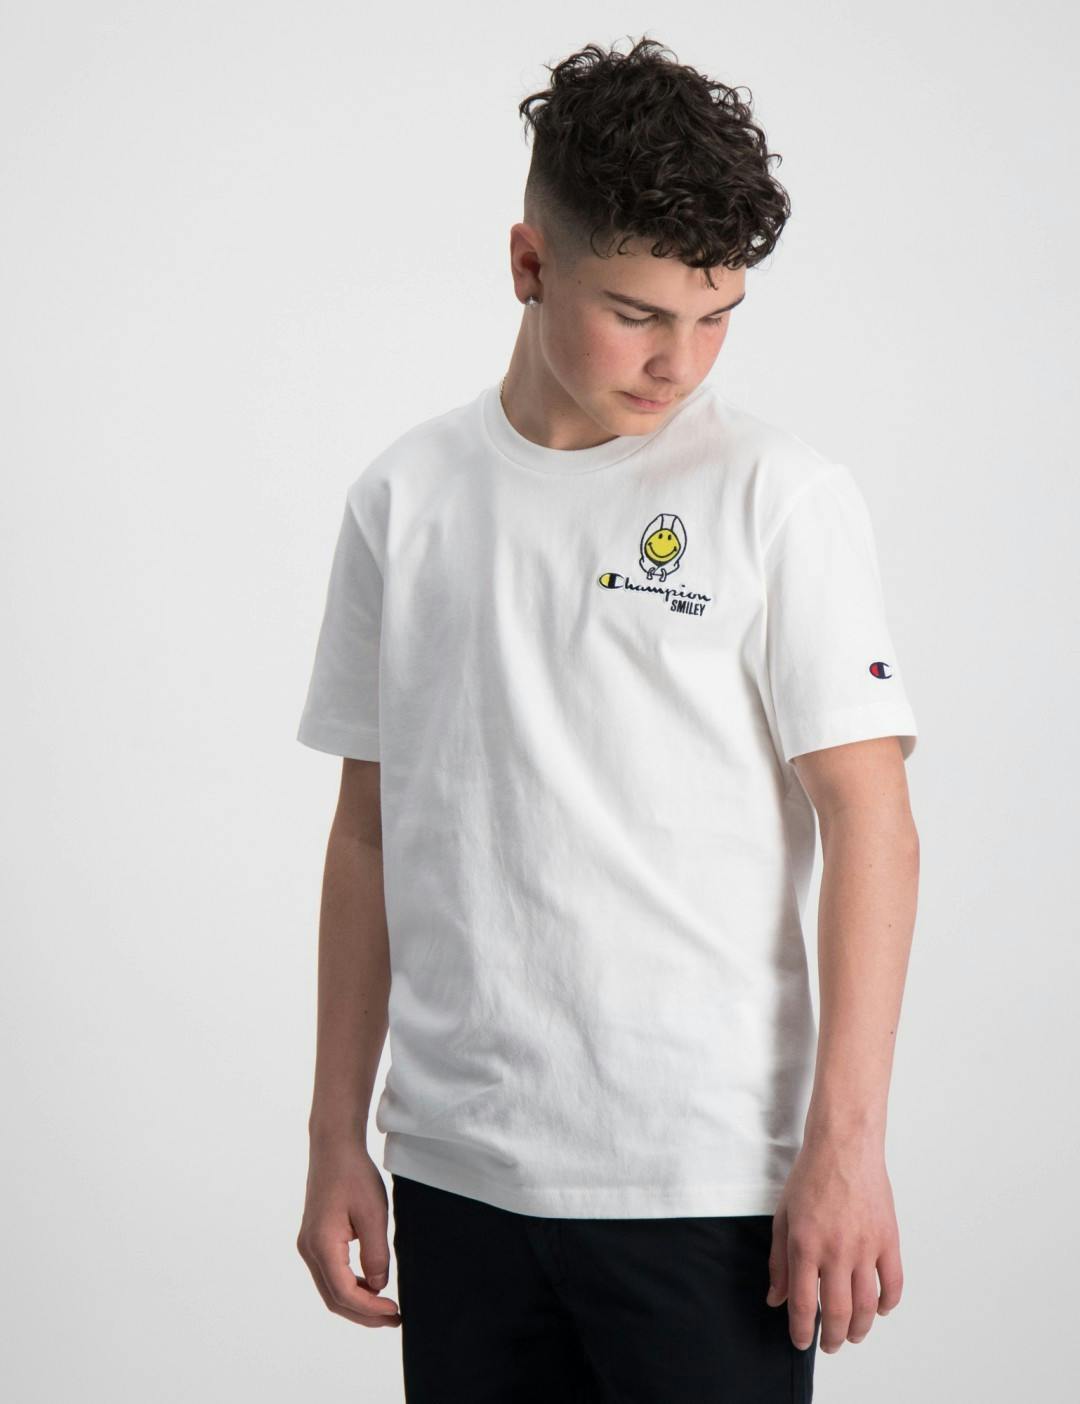 Weiß Crewneck T-Shirt für Jungen | Kids Brand Store